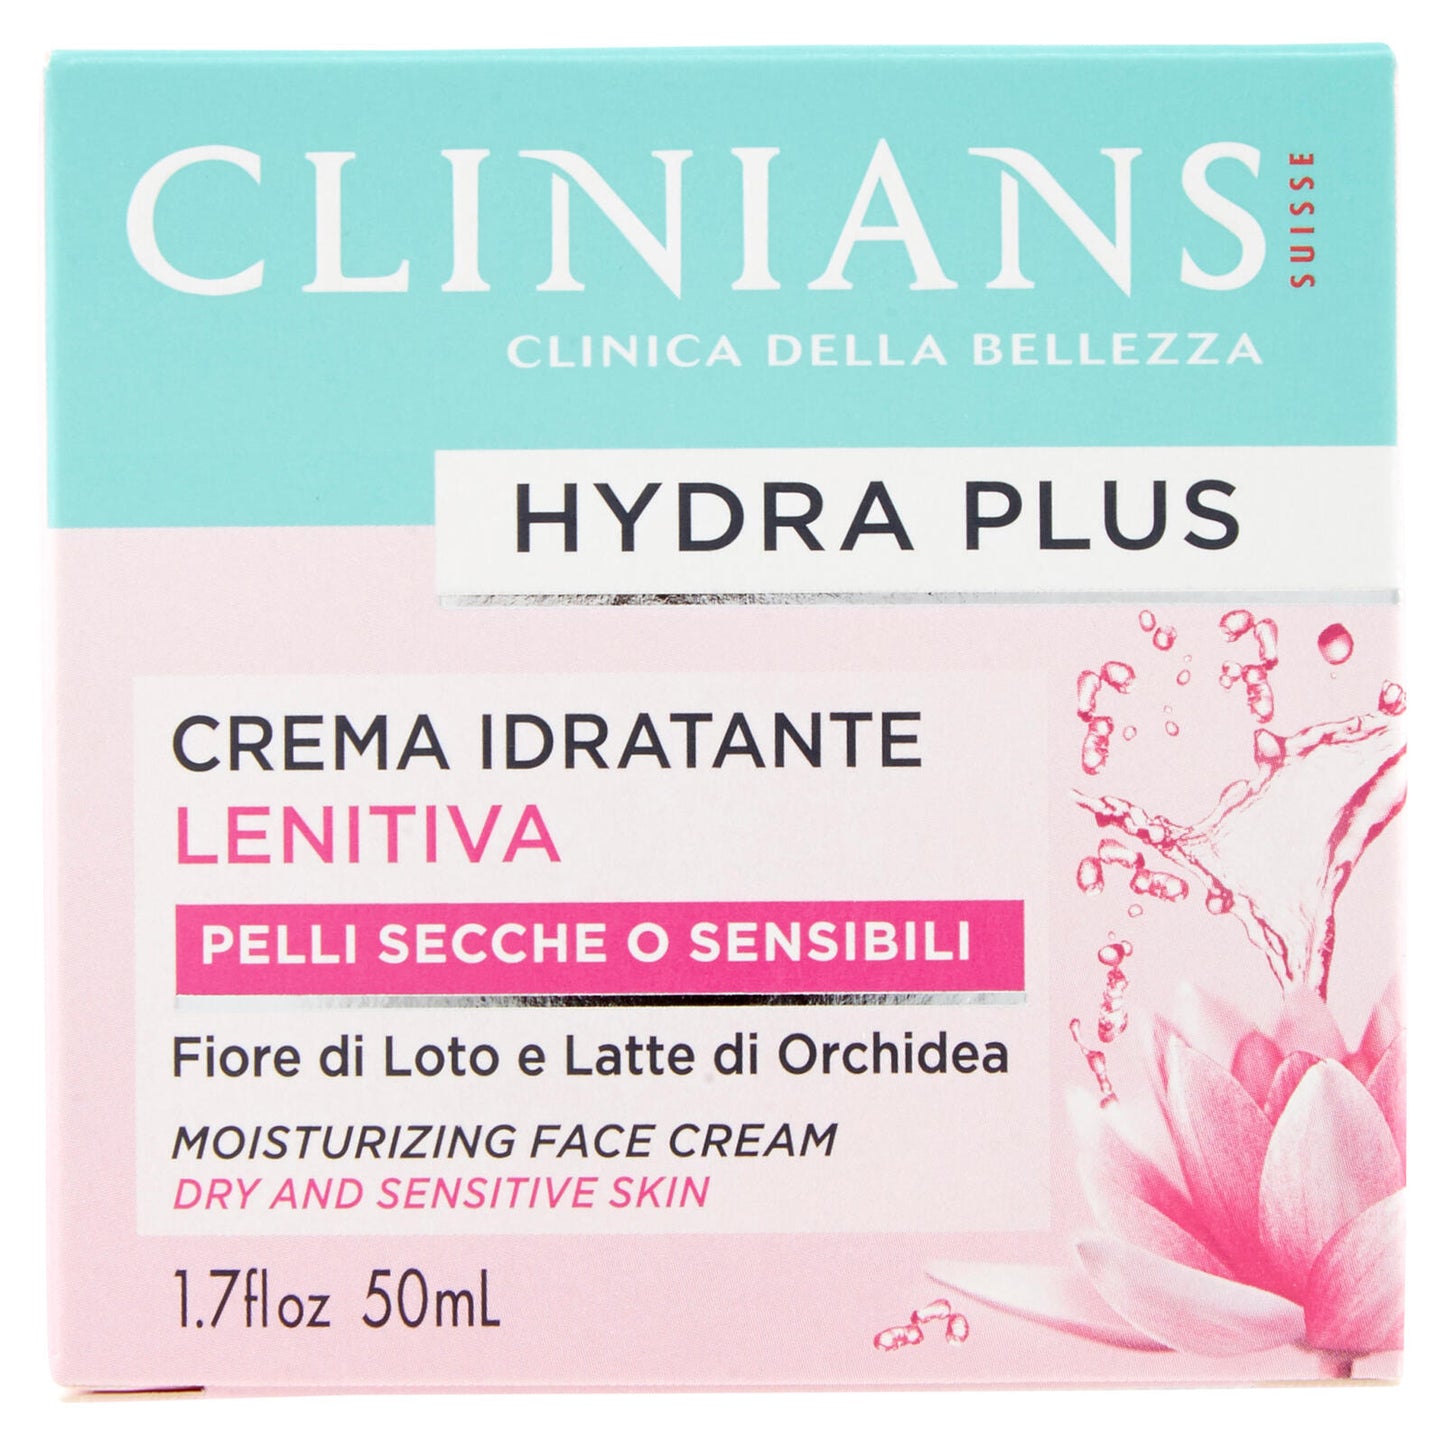 Clinians Hydra Plus Crema Idratante Lenitiva Pelli Secche o Sensibili 50 mL